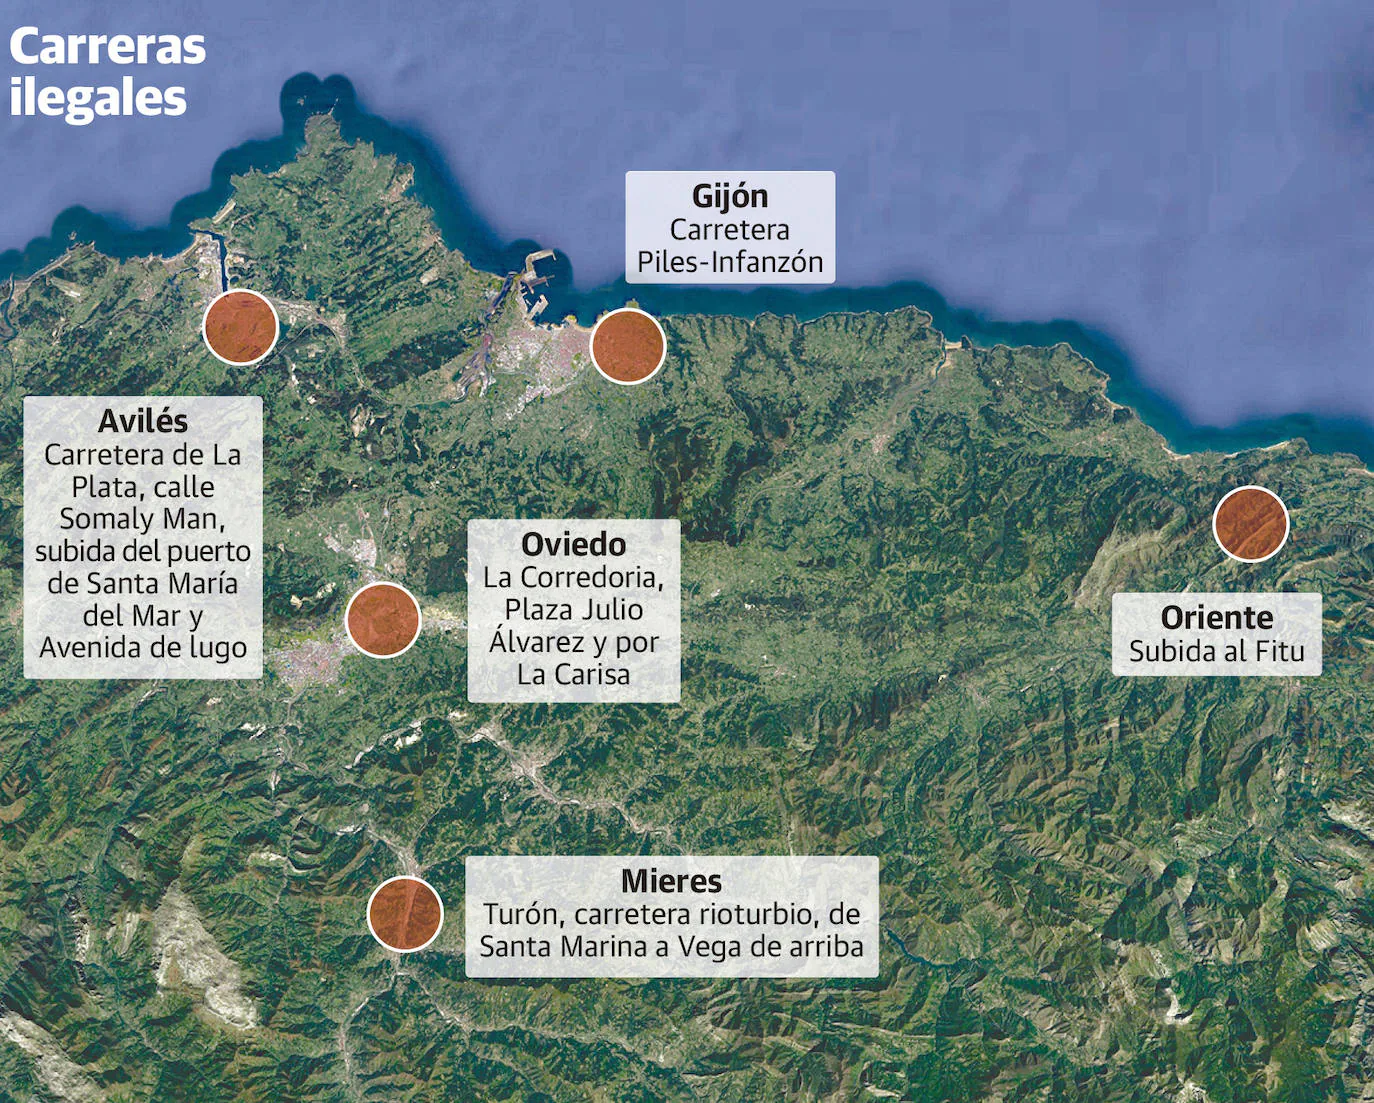 Localizadas doce carreteras en Asturias con carreras ilegales de coches